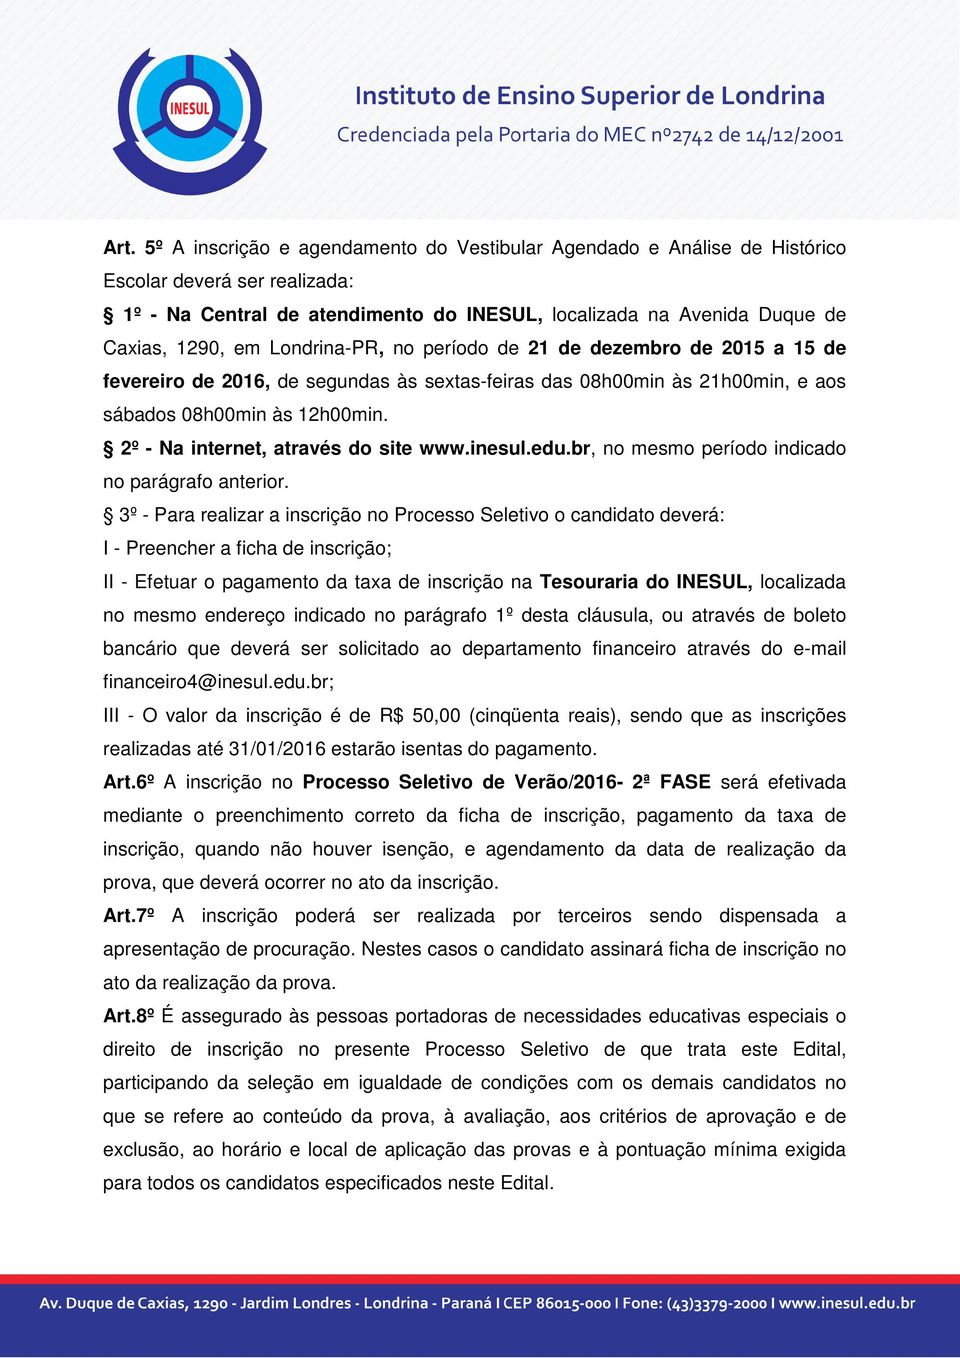 2º - Na internet, através do site www.inesul.edu.br, no mesmo período indicado no parágrafo anterior.